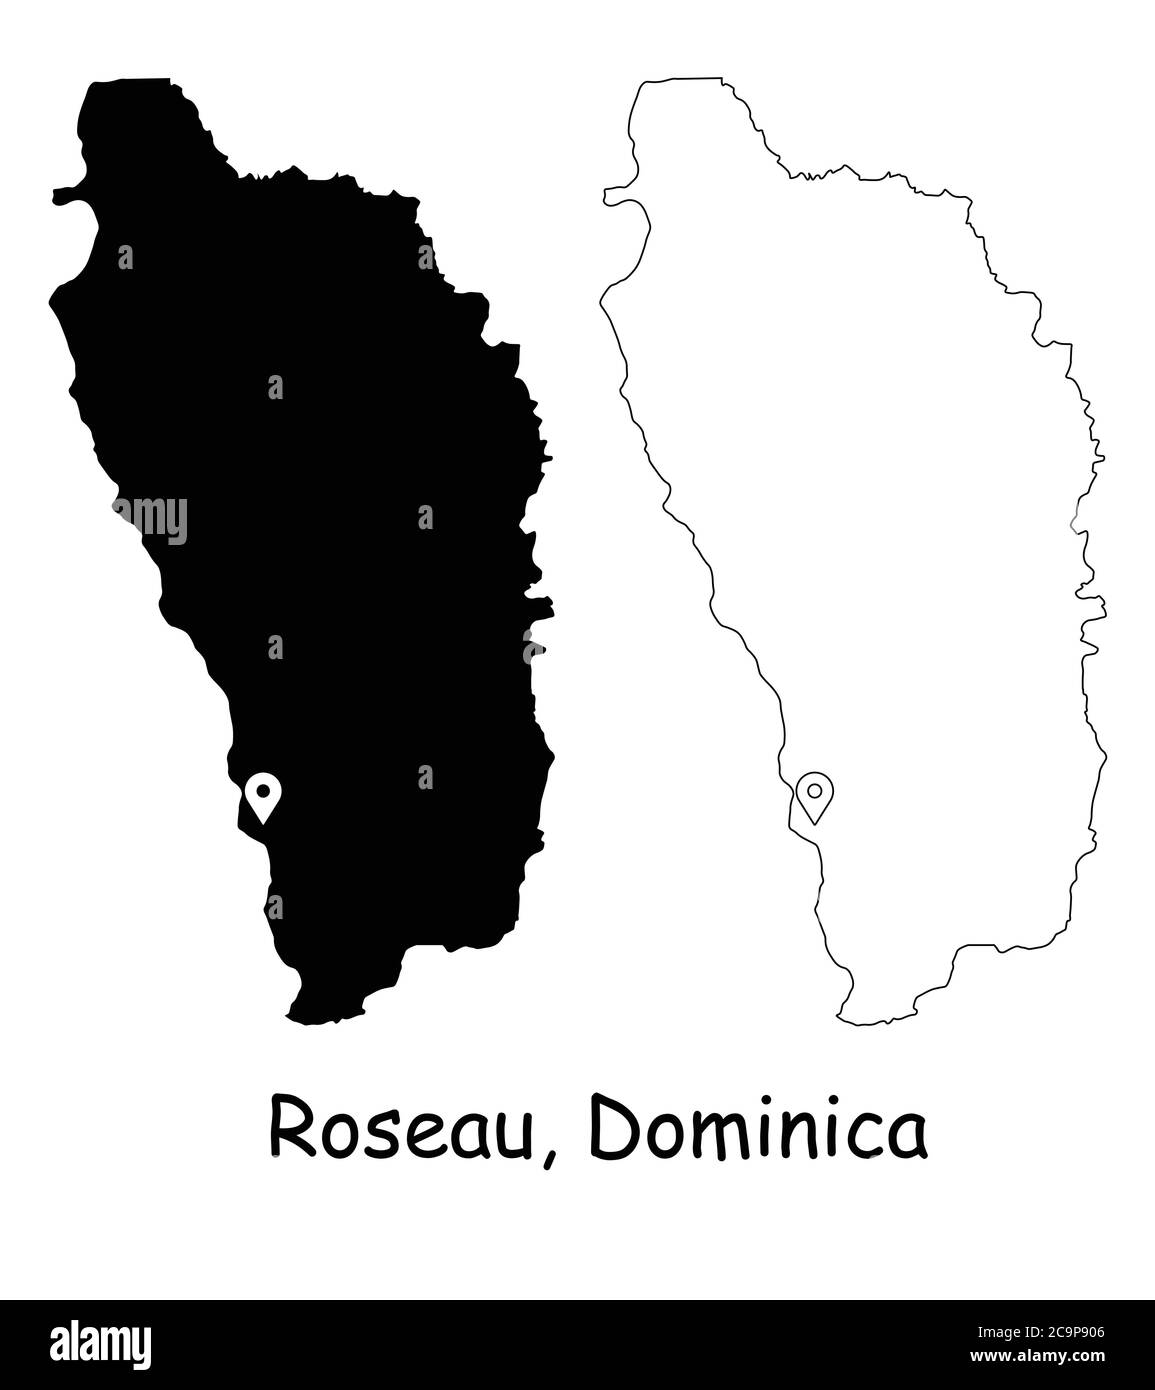 Roseau Dominique. Carte détaillée du pays avec broche d'emplacement sur Capital City. Cartes silhouettes et vectorielles noires isolées sur fond blanc. Vecteur EPS Illustration de Vecteur